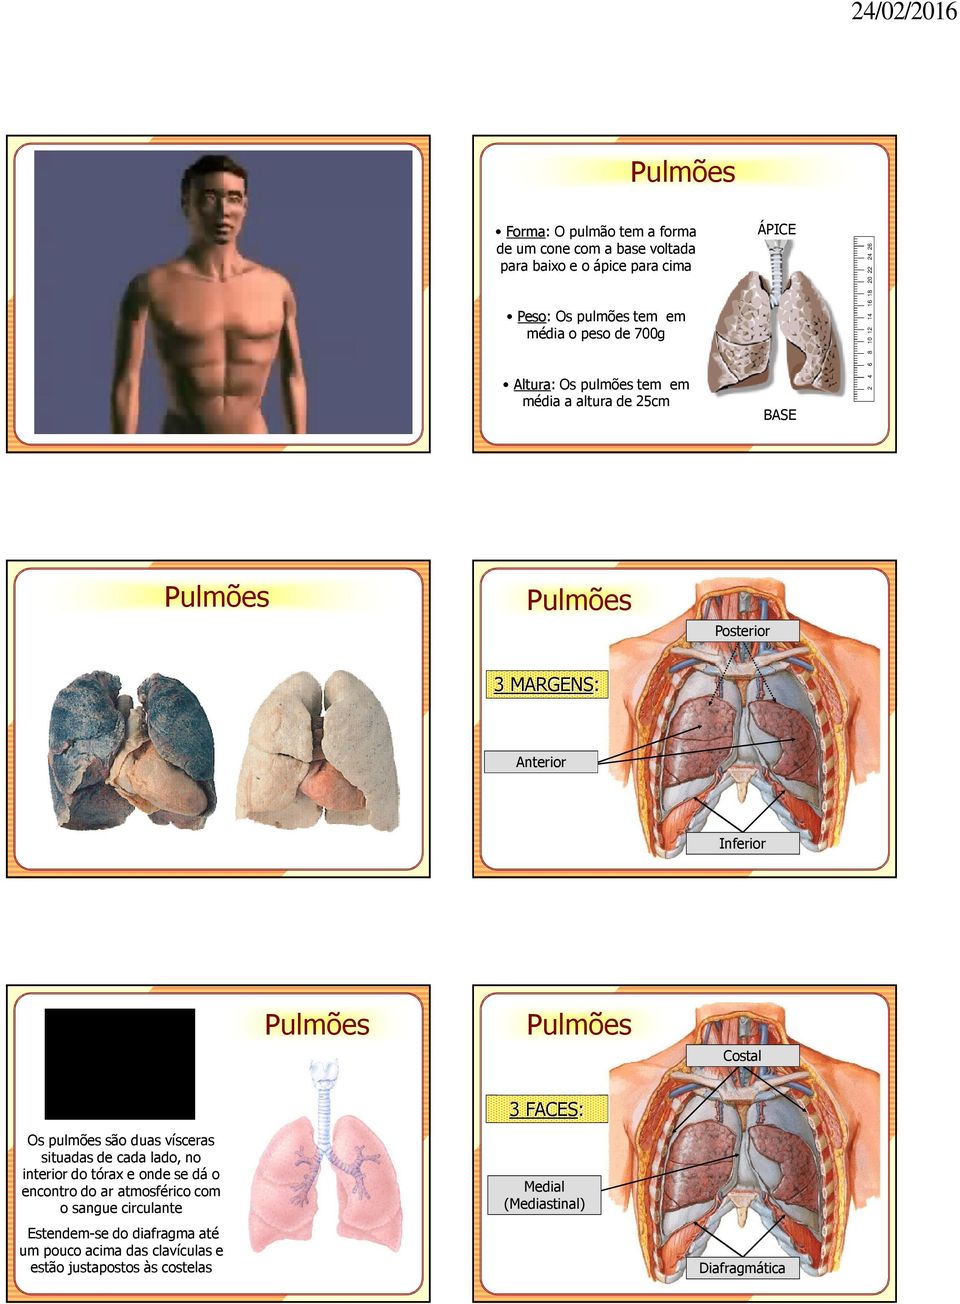 Inferior Pulmões Pulmões Costal Os pulmões são duas vísceras situadas de cada lado, no interior do tórax e onde se dá o encontro do ar